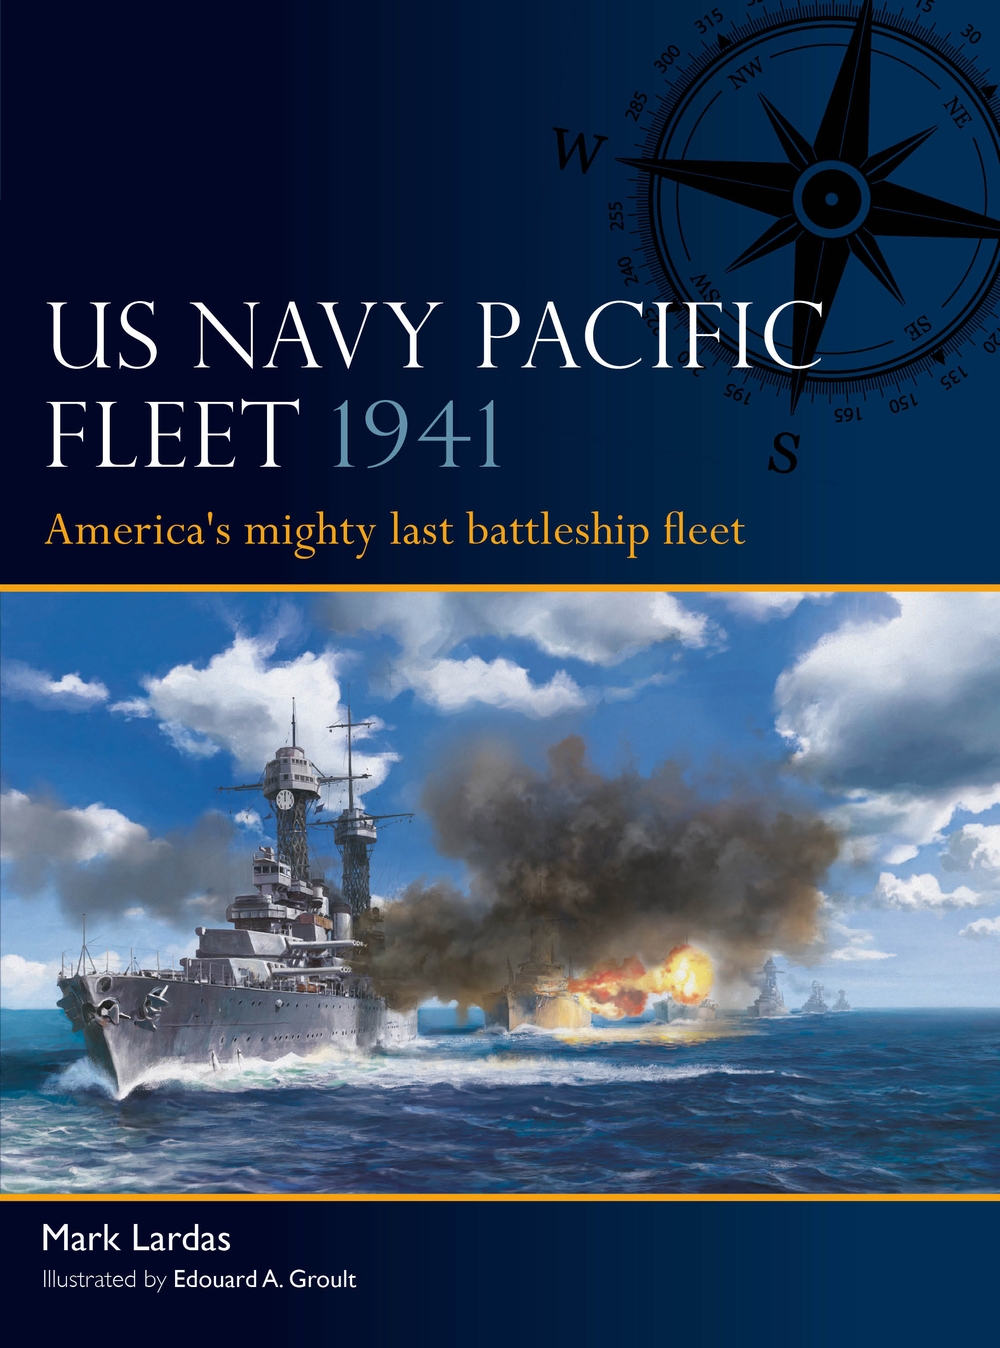 US Navy Pacific Fleet 1941 book jacket